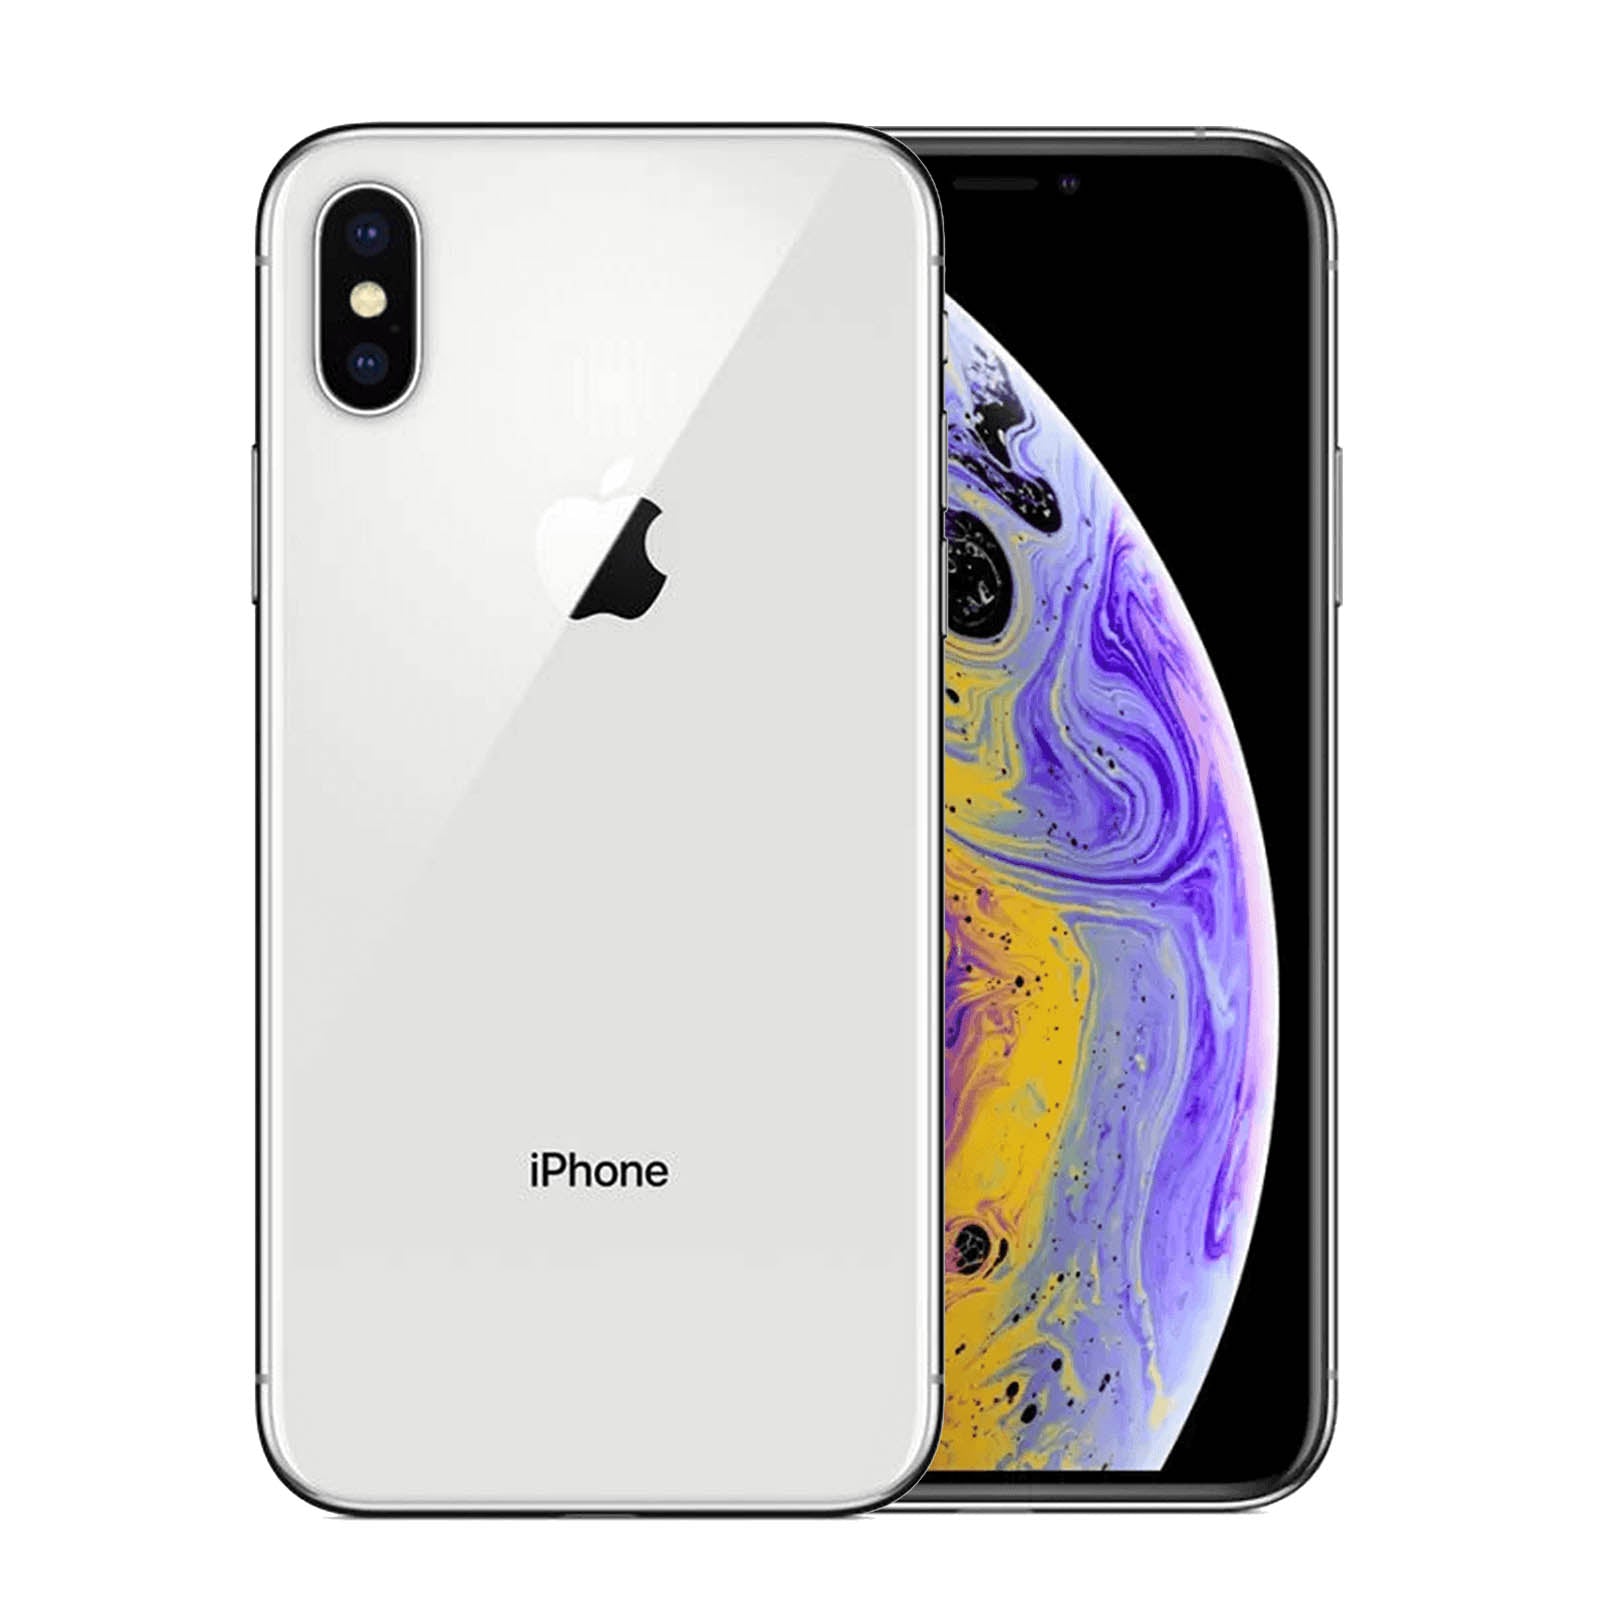 Apple iPhone XS 64GB - Silver – Loop Mobile - AU